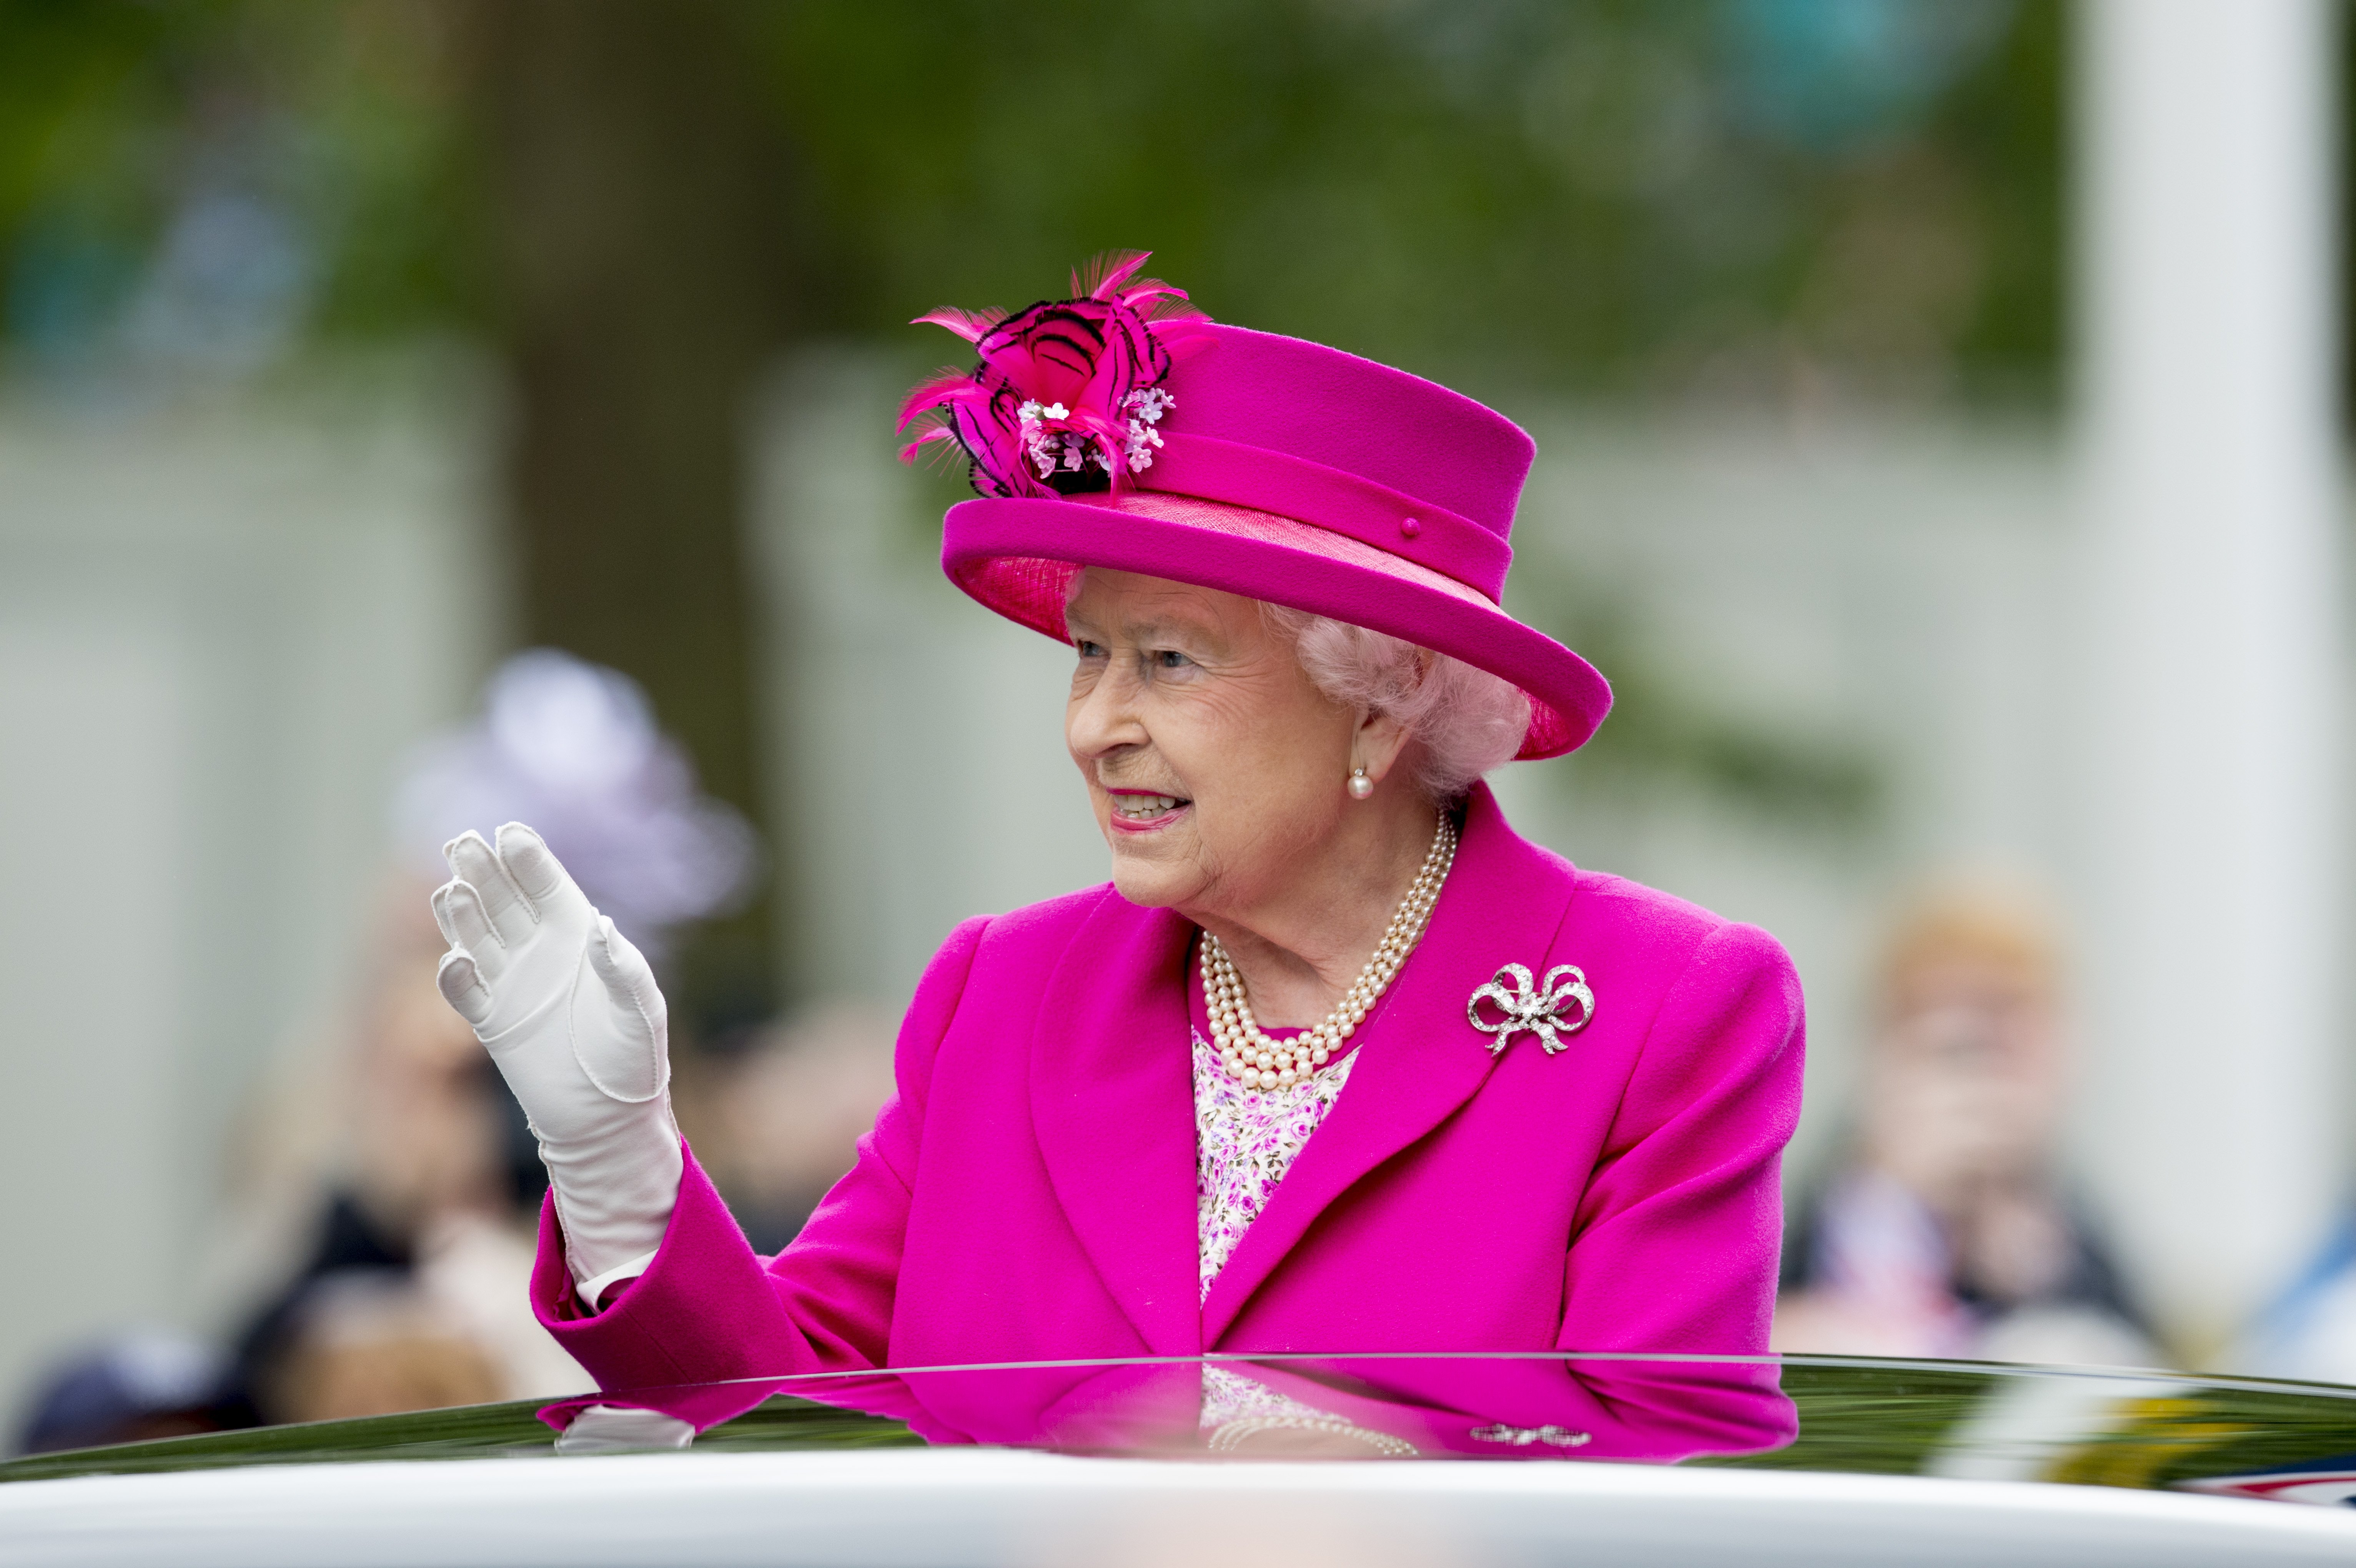 2016-06-12 14:35:43 LONDEN - Queen Elizabeth wuift naar het publiek als ze in een open rijtuig van Buckingham Palace naar de exercitieplaats voor de Horse Guards Parade rijdt. ANP ROYAL IMAGES ROBIN UTRECHT